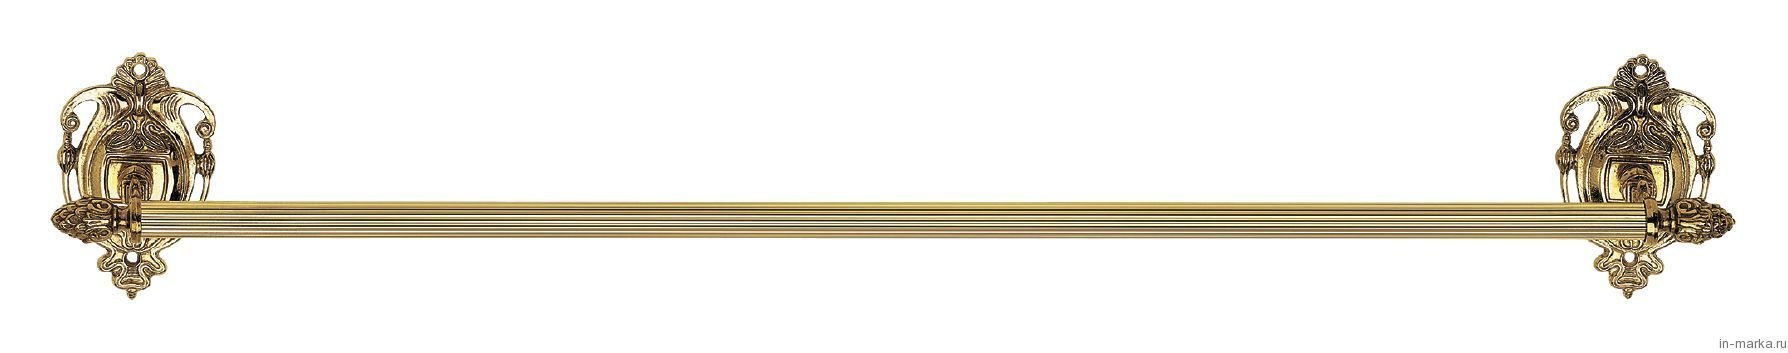 Полотенцедержатель 60см Impero AM-1228-Do-Ant античное золото - фото 1